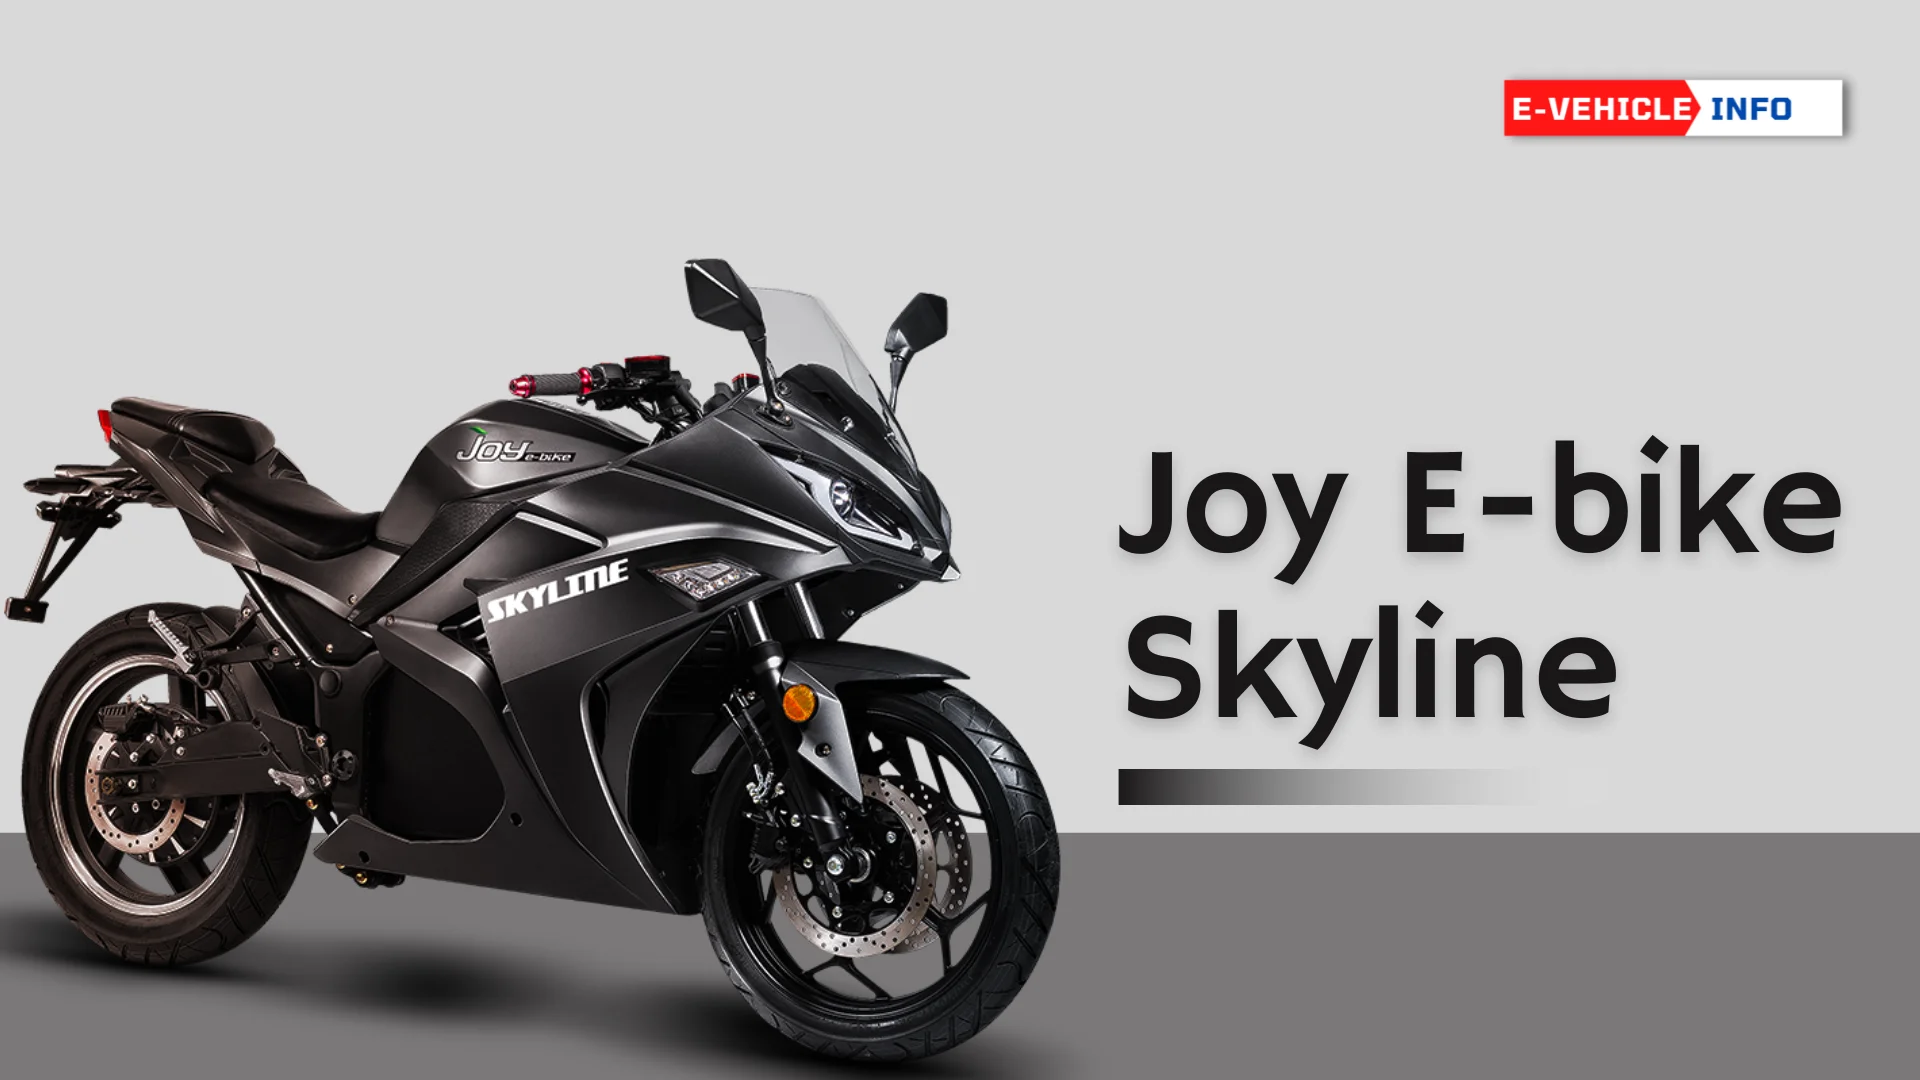 https://e-vehicleinfo.com/joy-e-bike-skyline-price-in-india-specs-highlights/